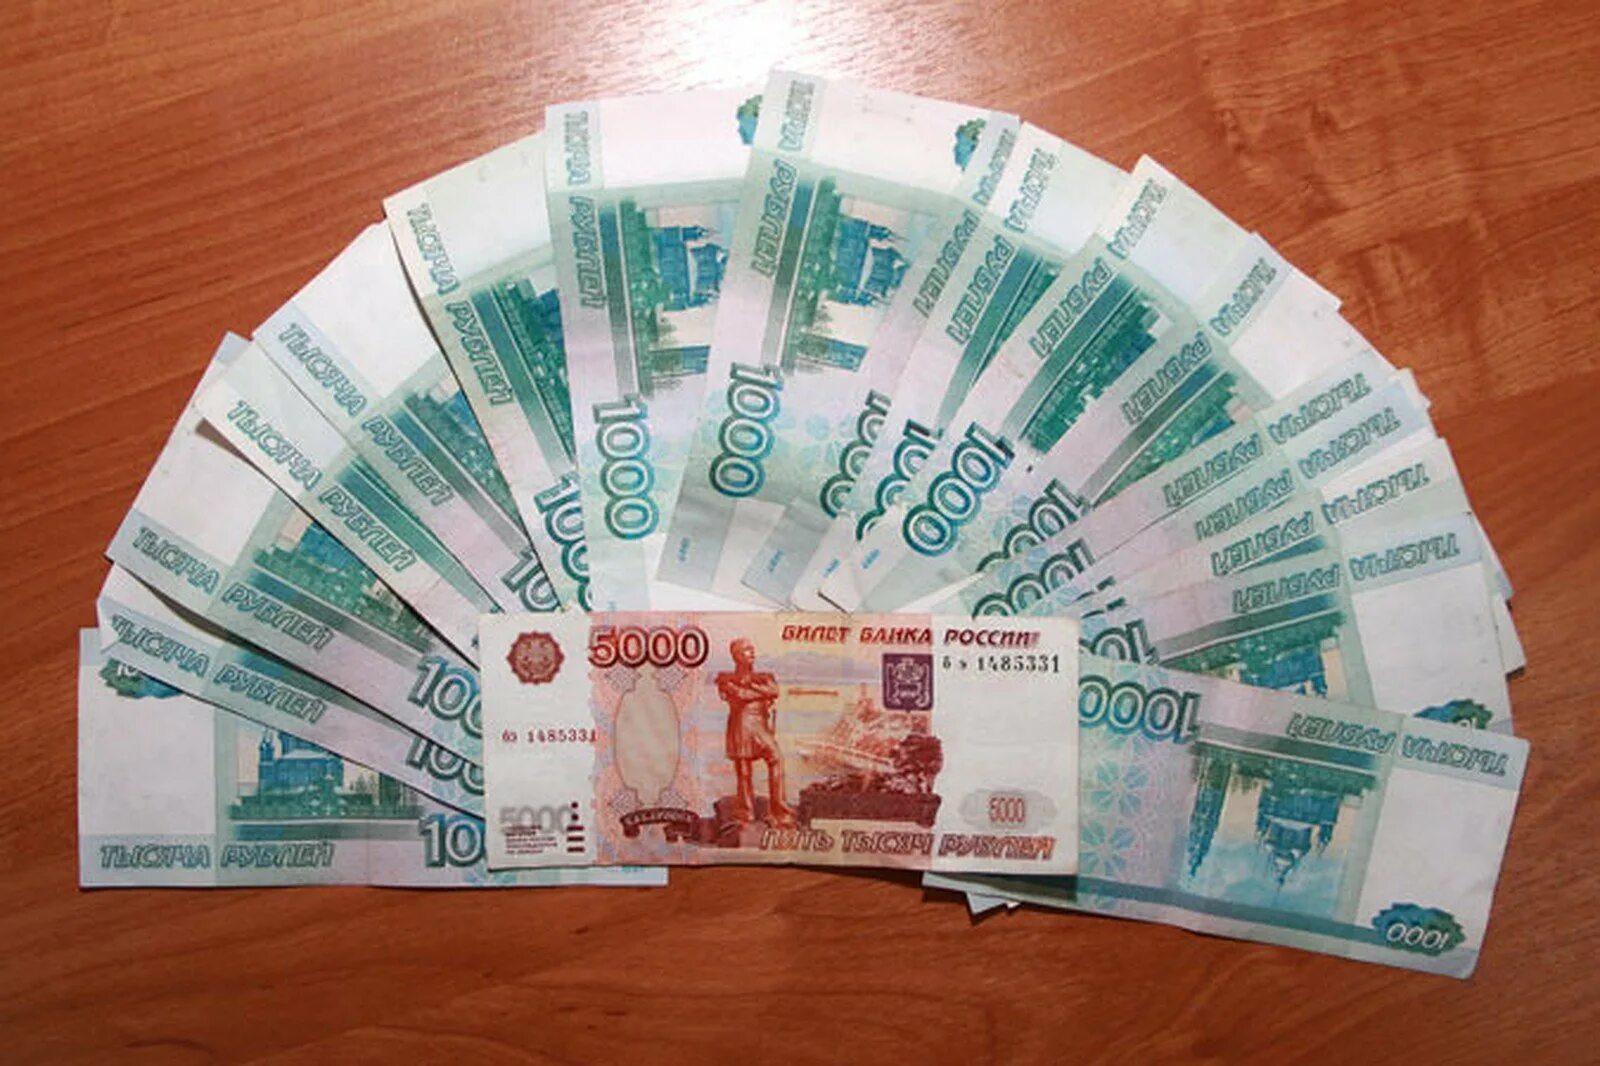 5 от 14 000 рублей. 22 Тысячи рублей. Тысячные купюры на столе. Деньги на столе. Деньги рубли.